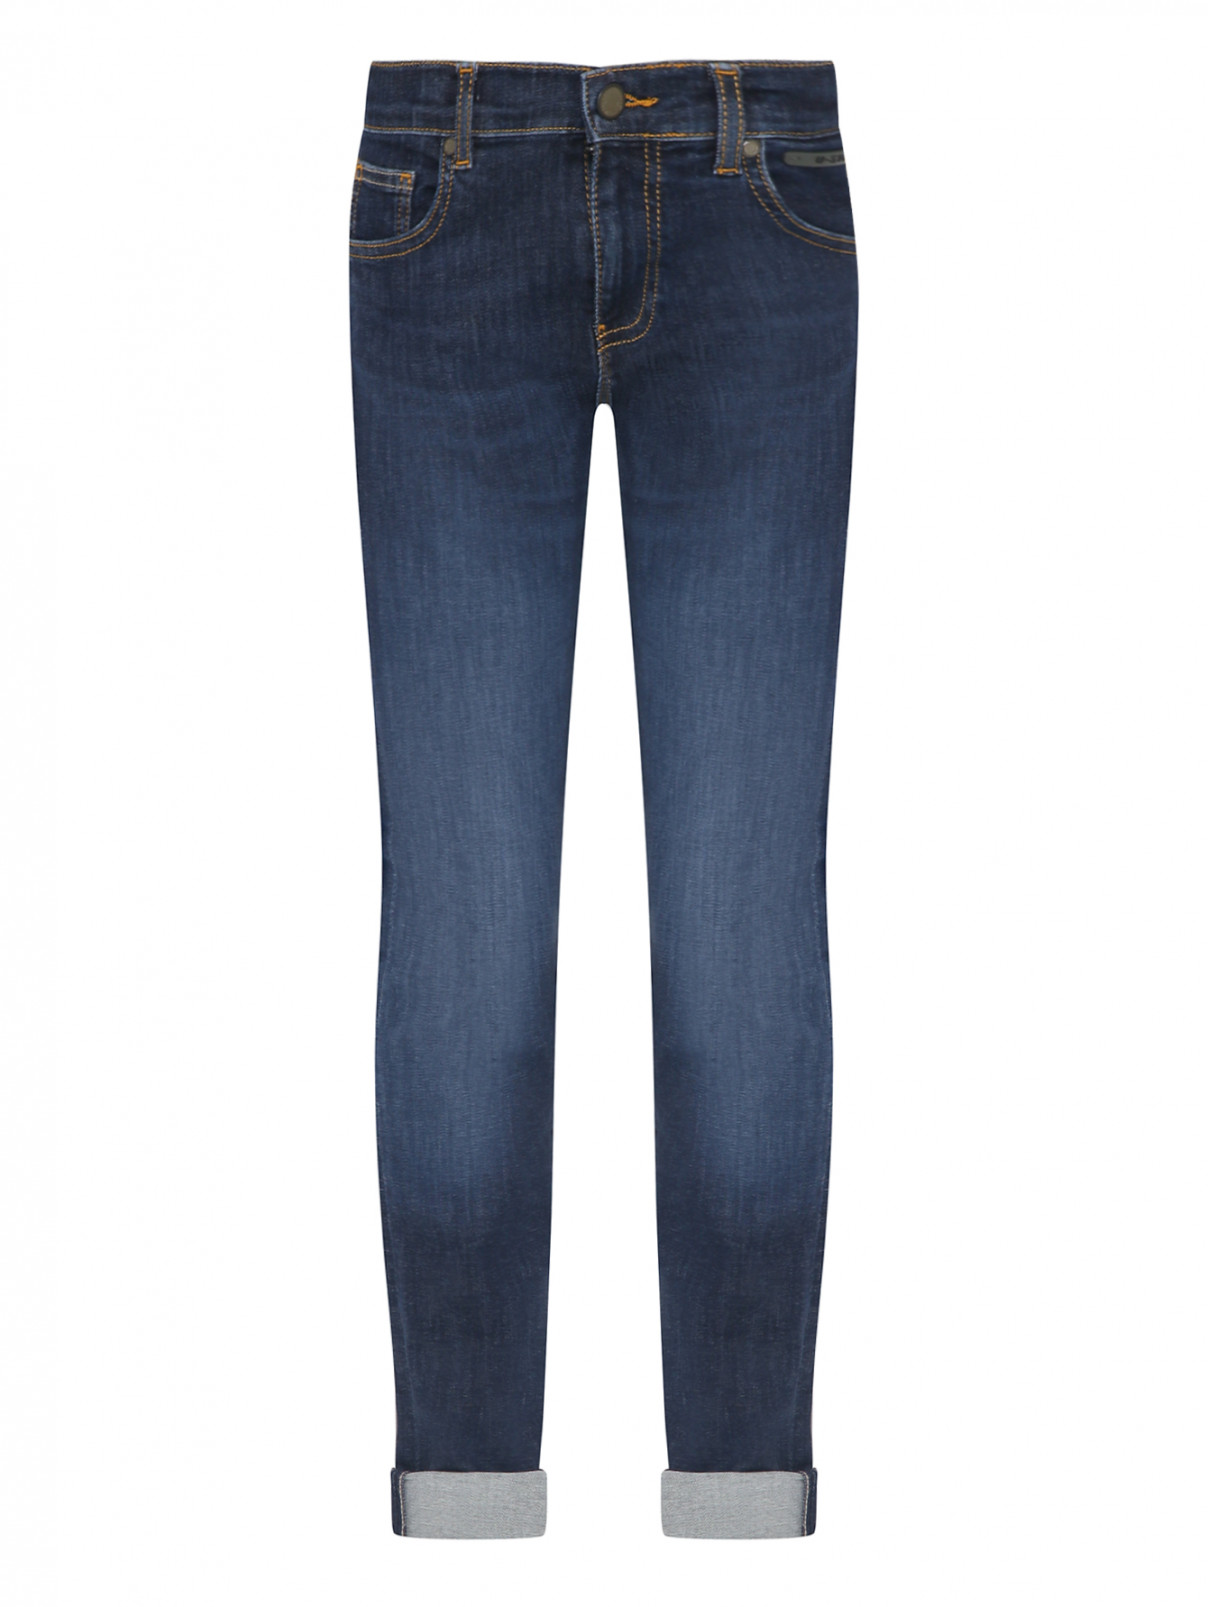 Узкие джинсы из темного денима Guess  –  Общий вид  – Цвет:  Синий